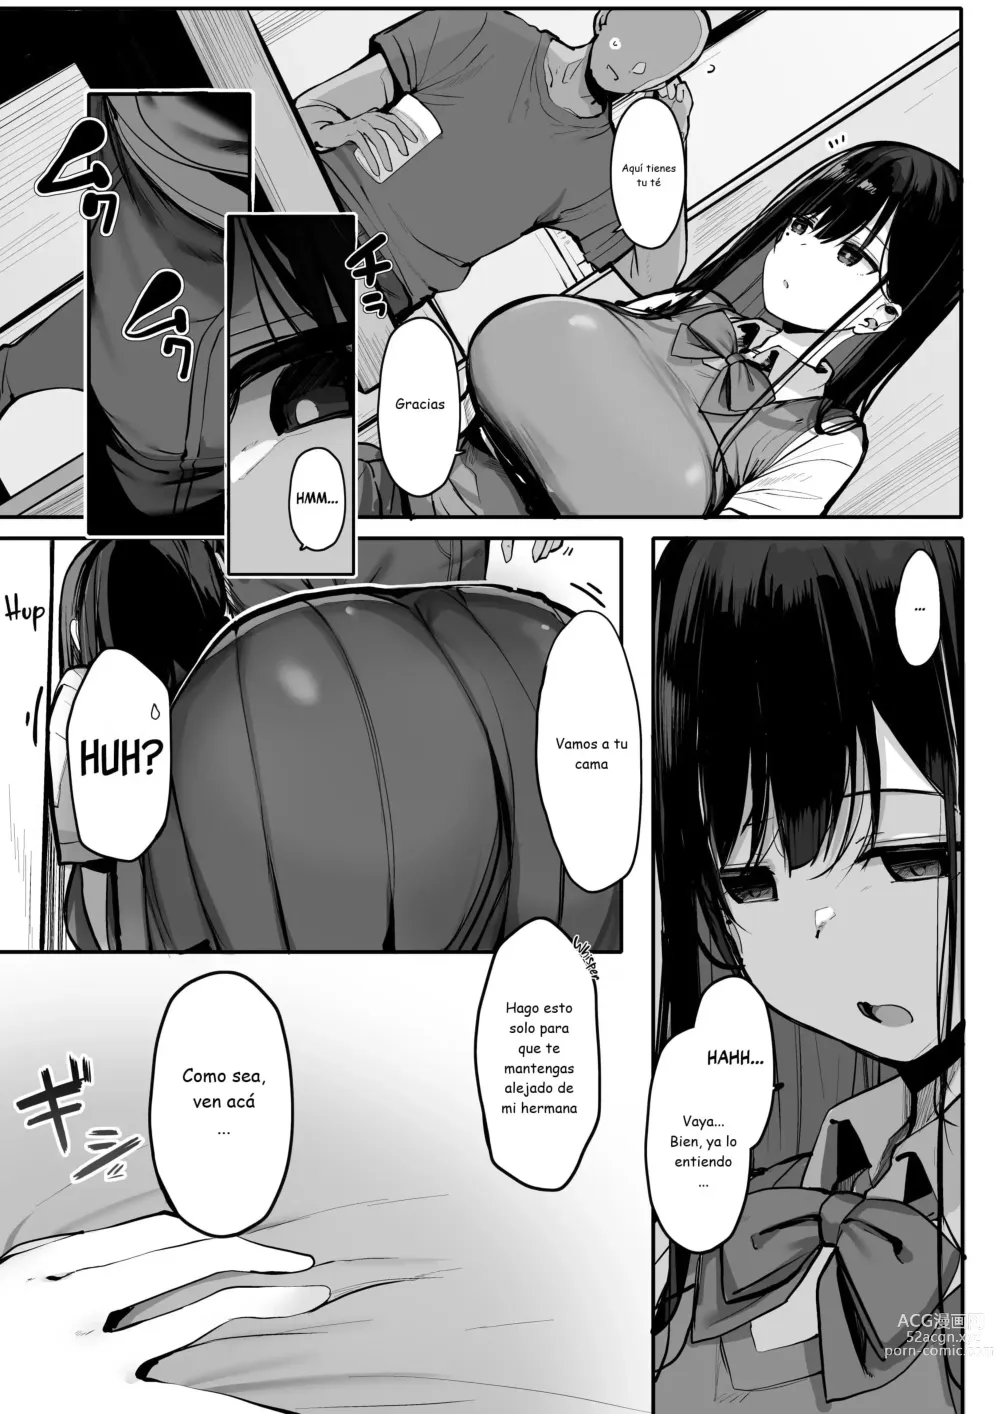 Page 5 of doujinshi Hey, donde está el condón?